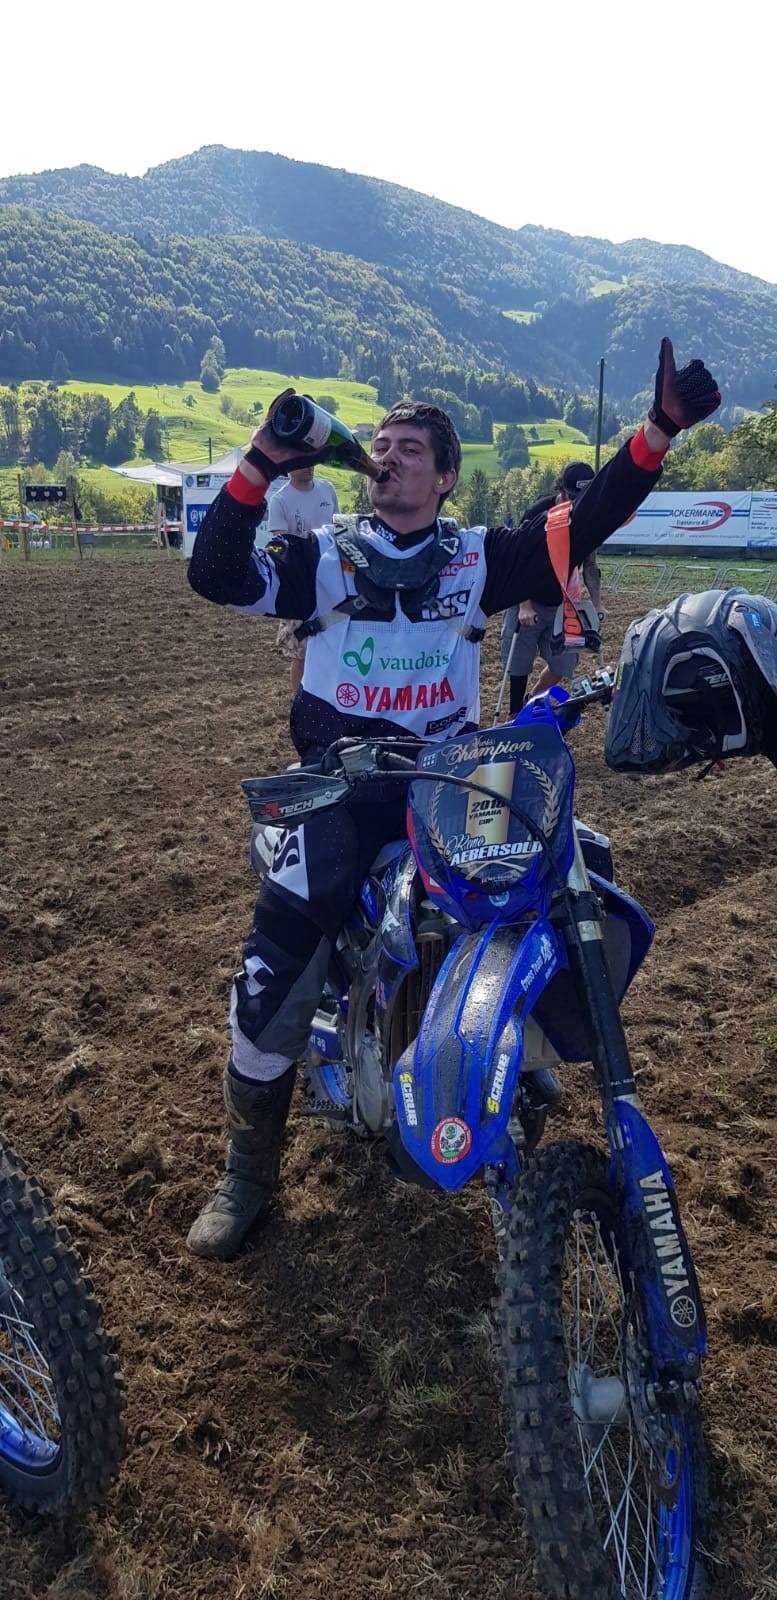 Remo nach der Zieleinfahrt als Schweizermeister im Yamaha-Cup 2018